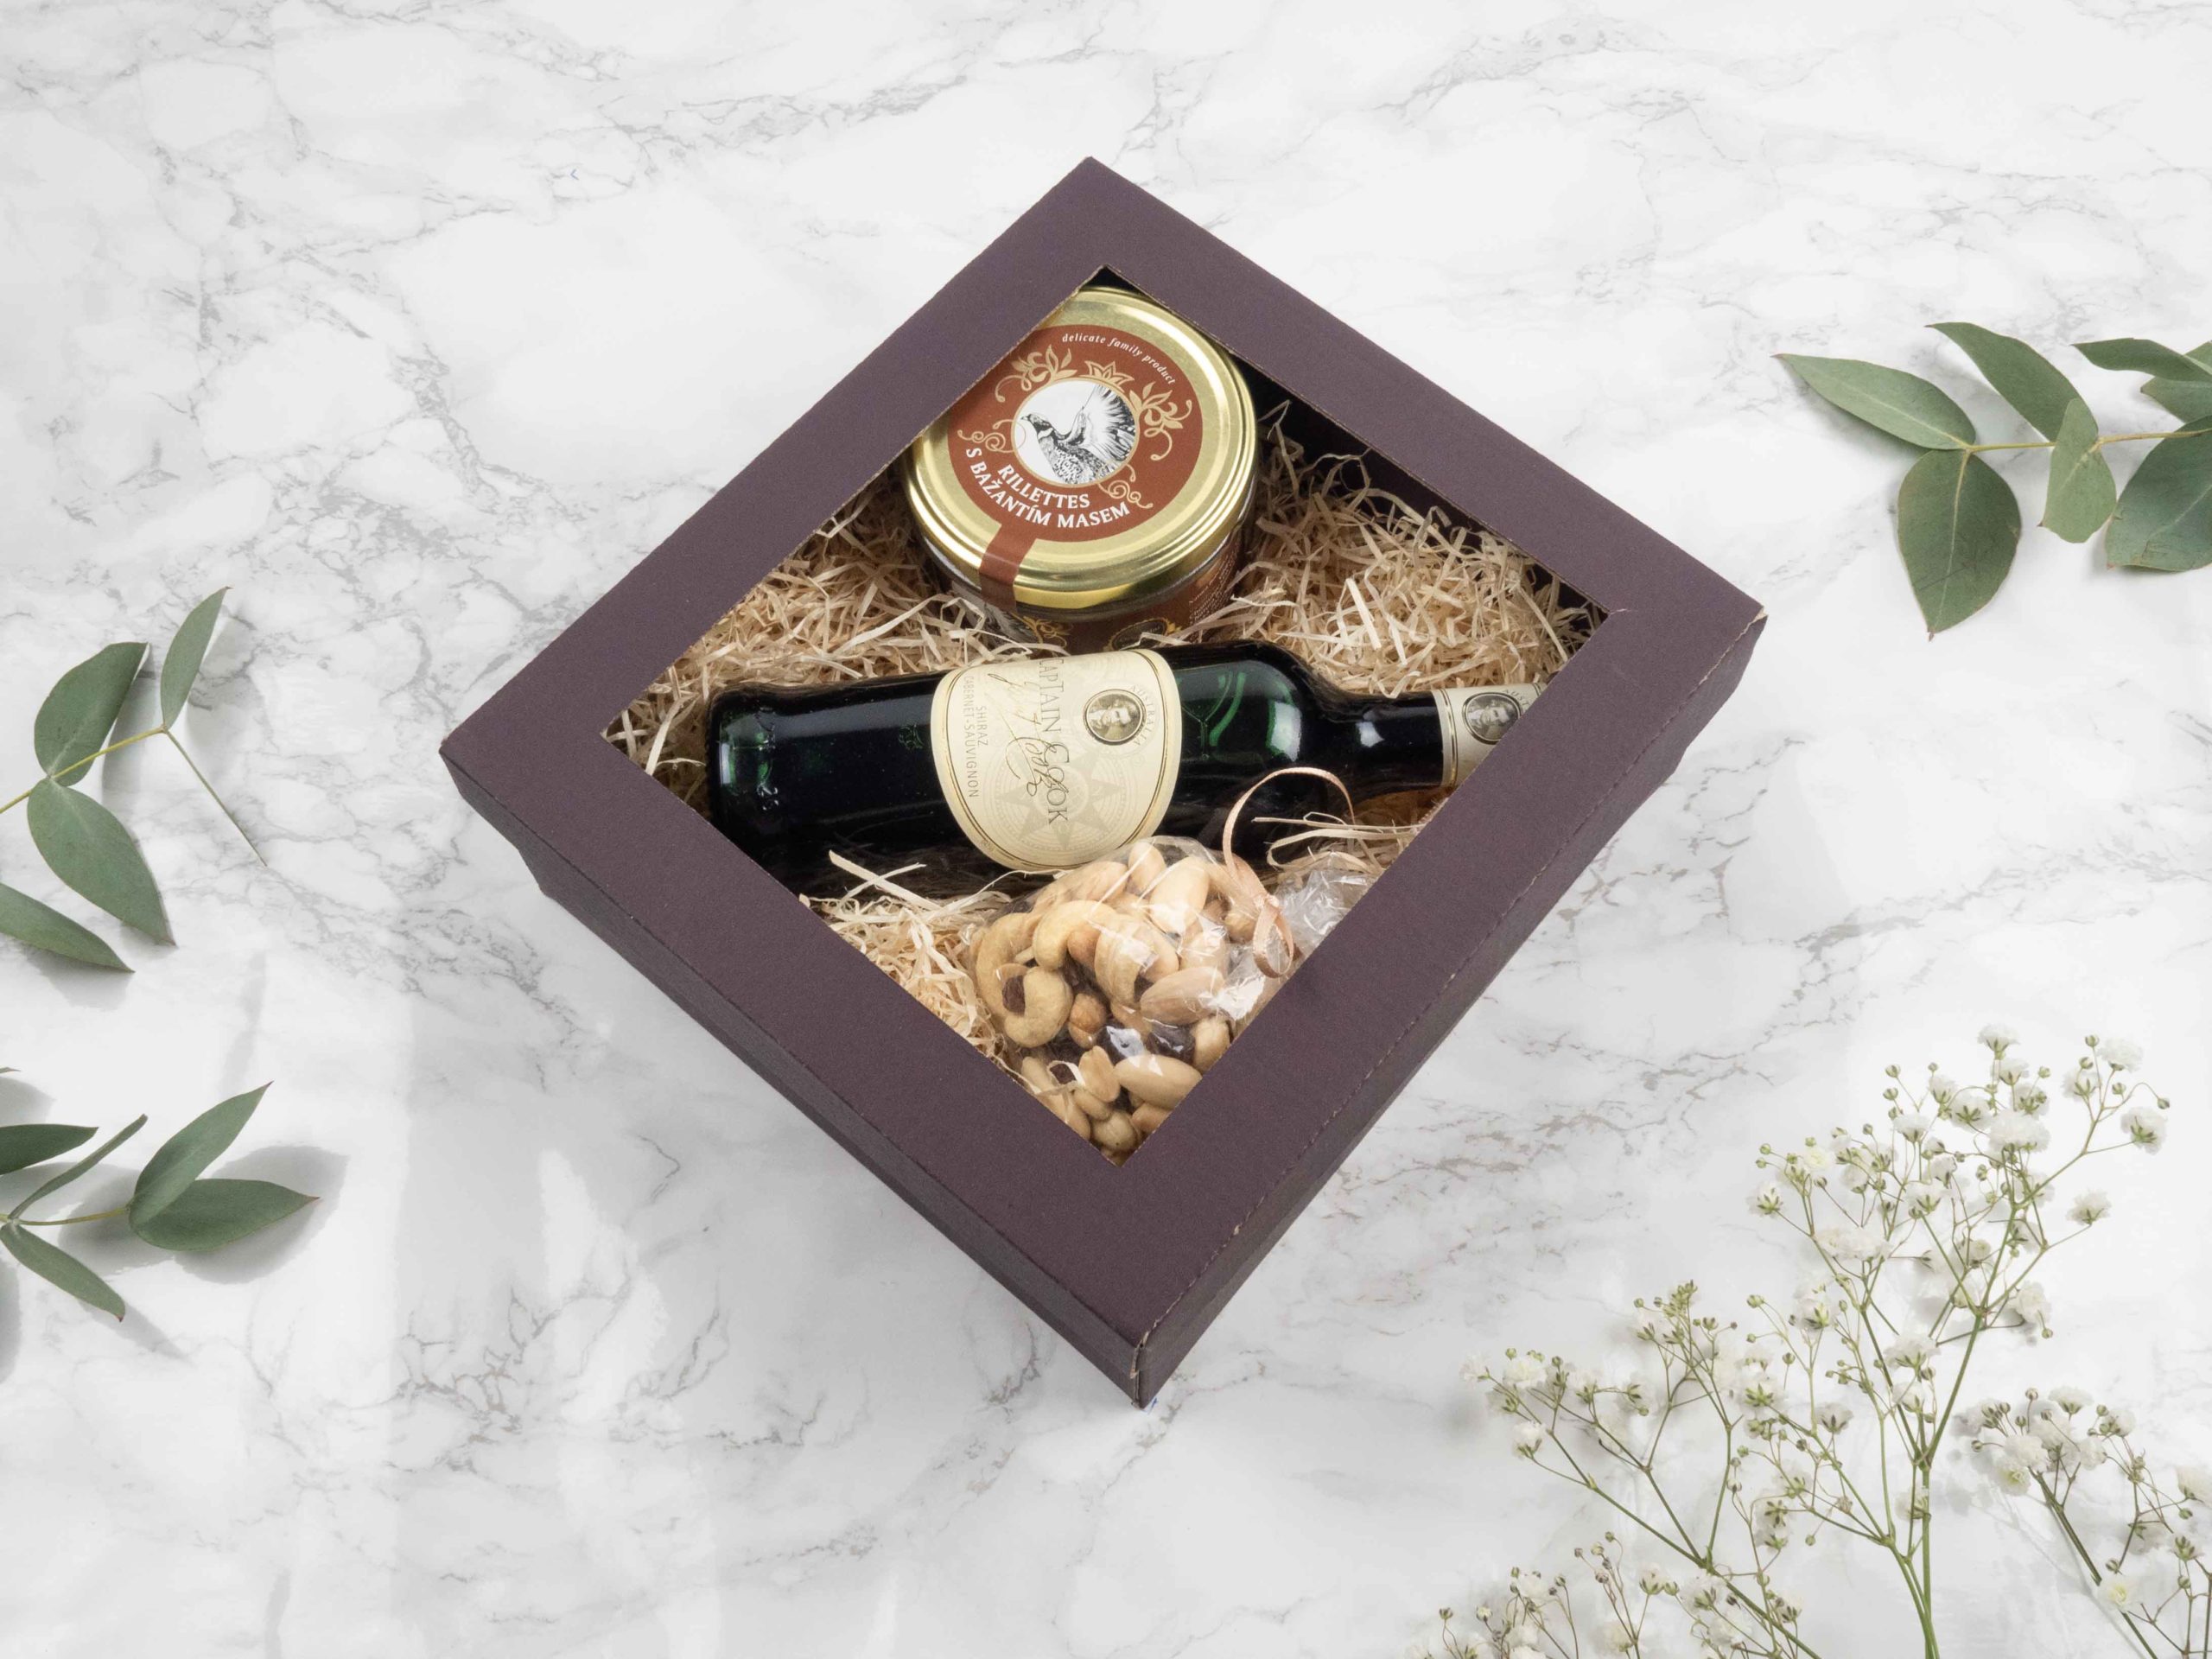 Dárková krabička v sobě ukrývá rilettes s bažantím masem, australské červené víno Shiraz a mix oblíbených oříšků. Všechny pochutiny jsou baleny v elegantní a ekologické papírové krabičce. Obdarujte s chutí malým degustačním zážitkem.